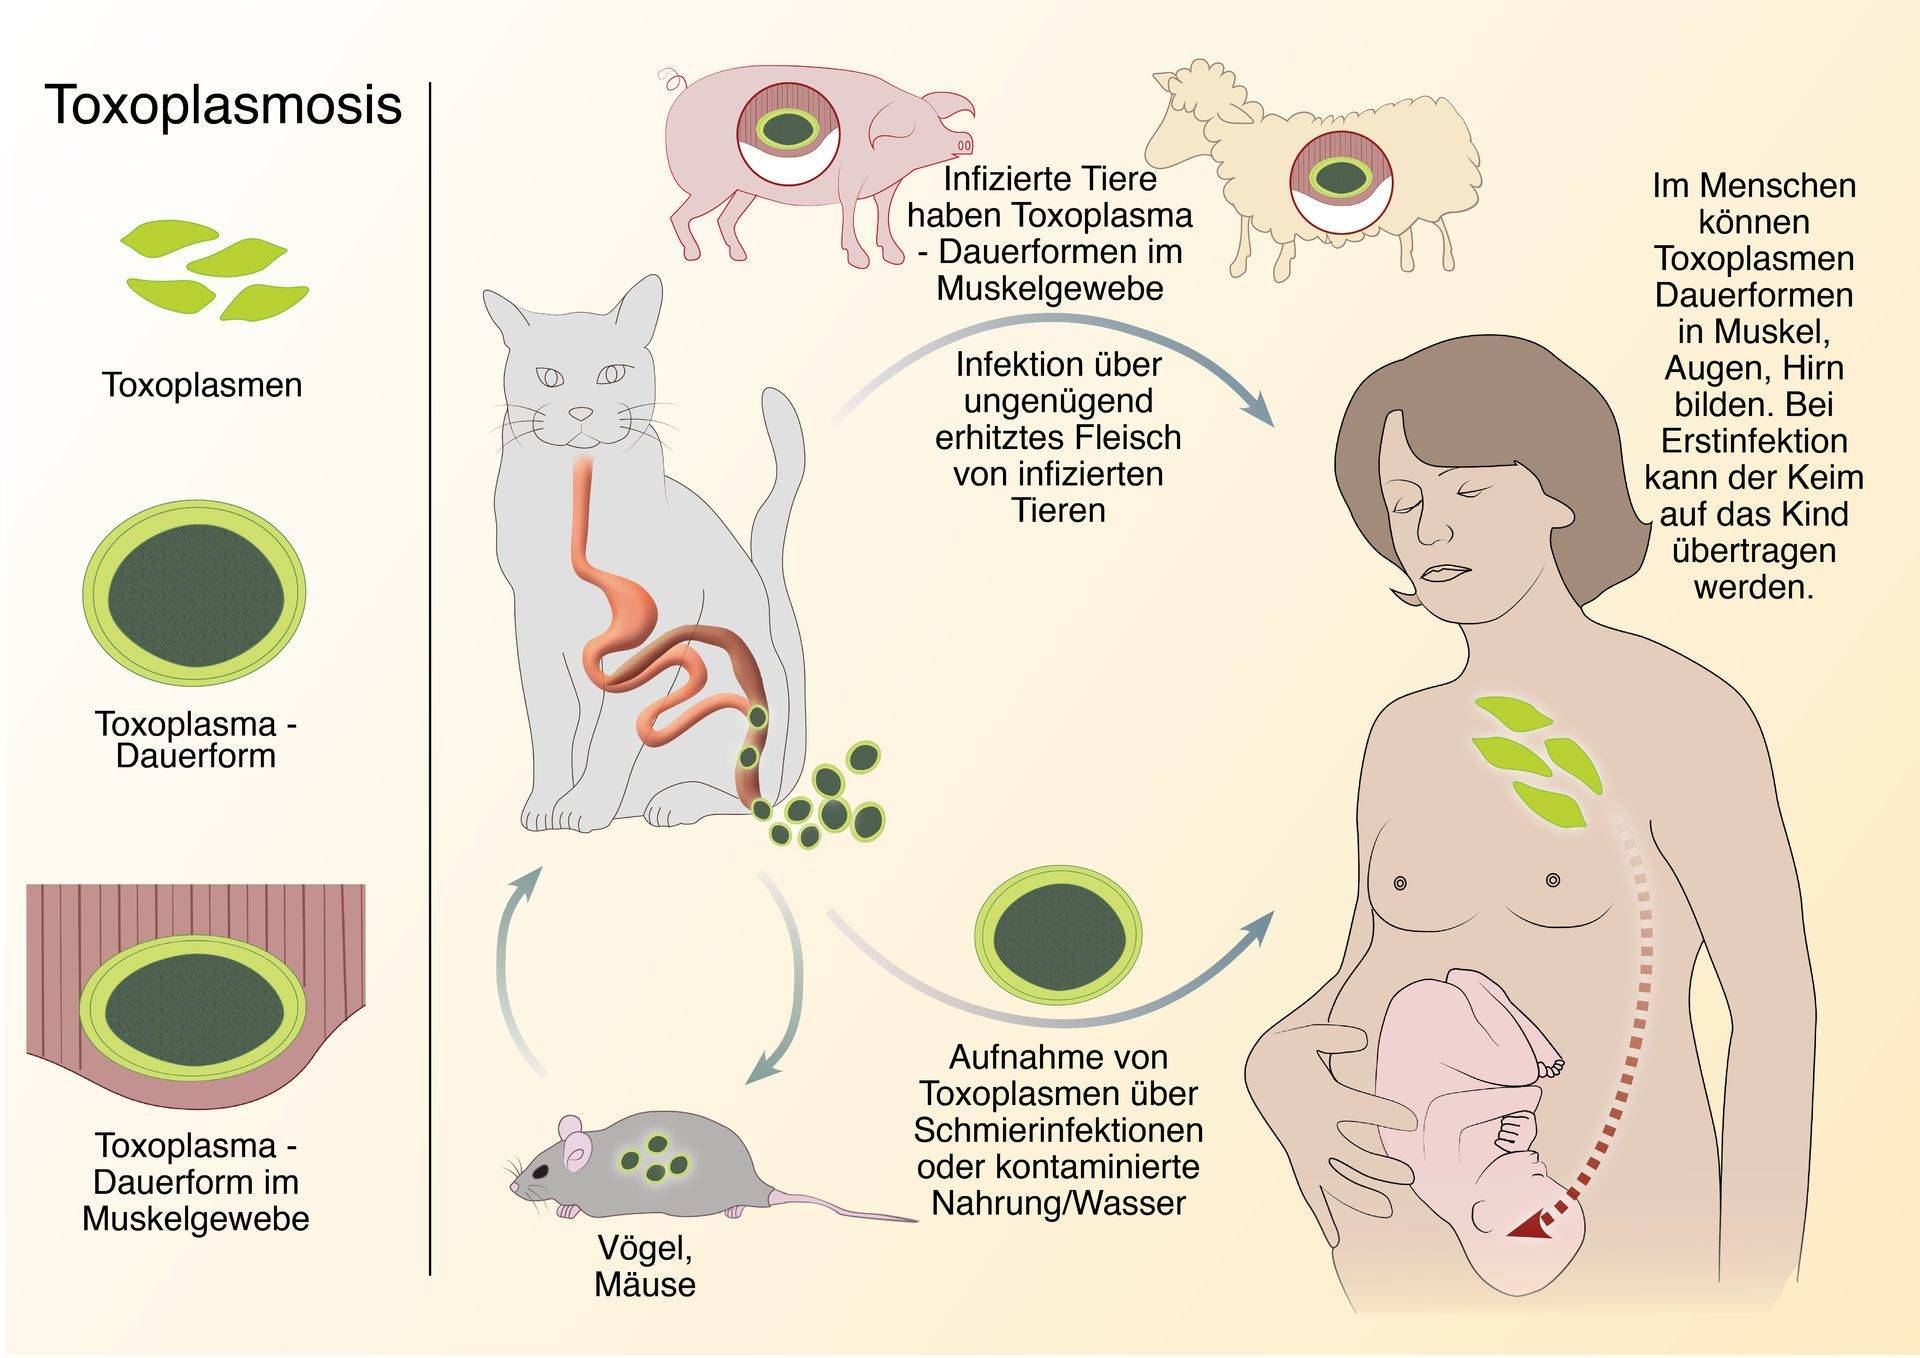 Как передается токсоплазмоз от кошки к человеку? – медицинский портал parazit.expert